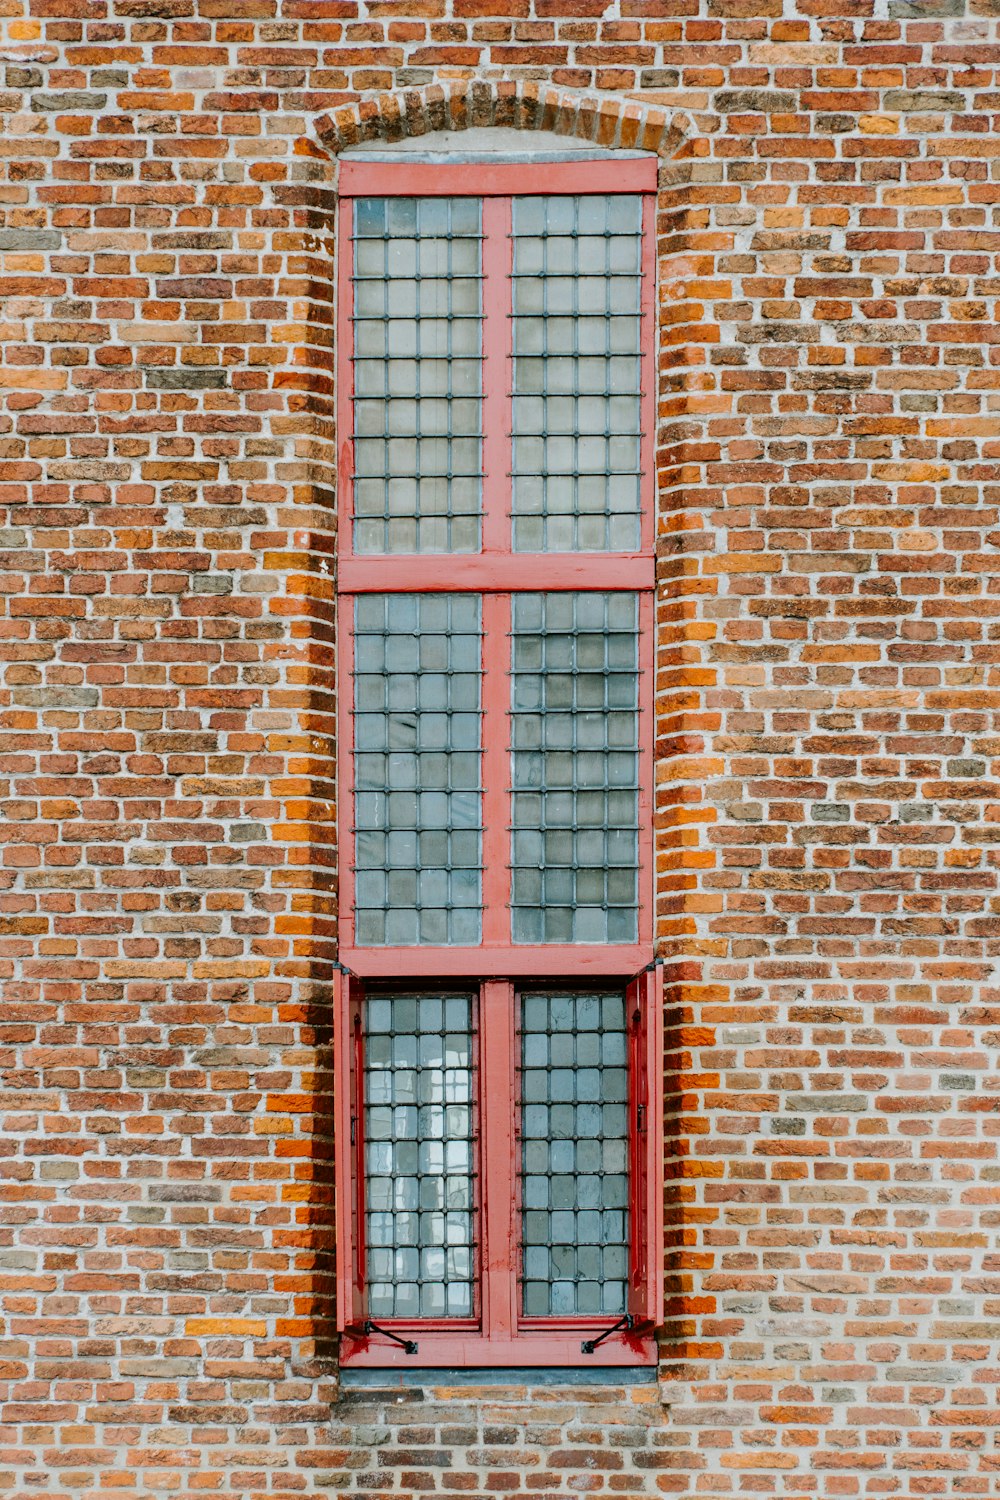 ventana inferior abierta de un edificio de ladrillos marrones